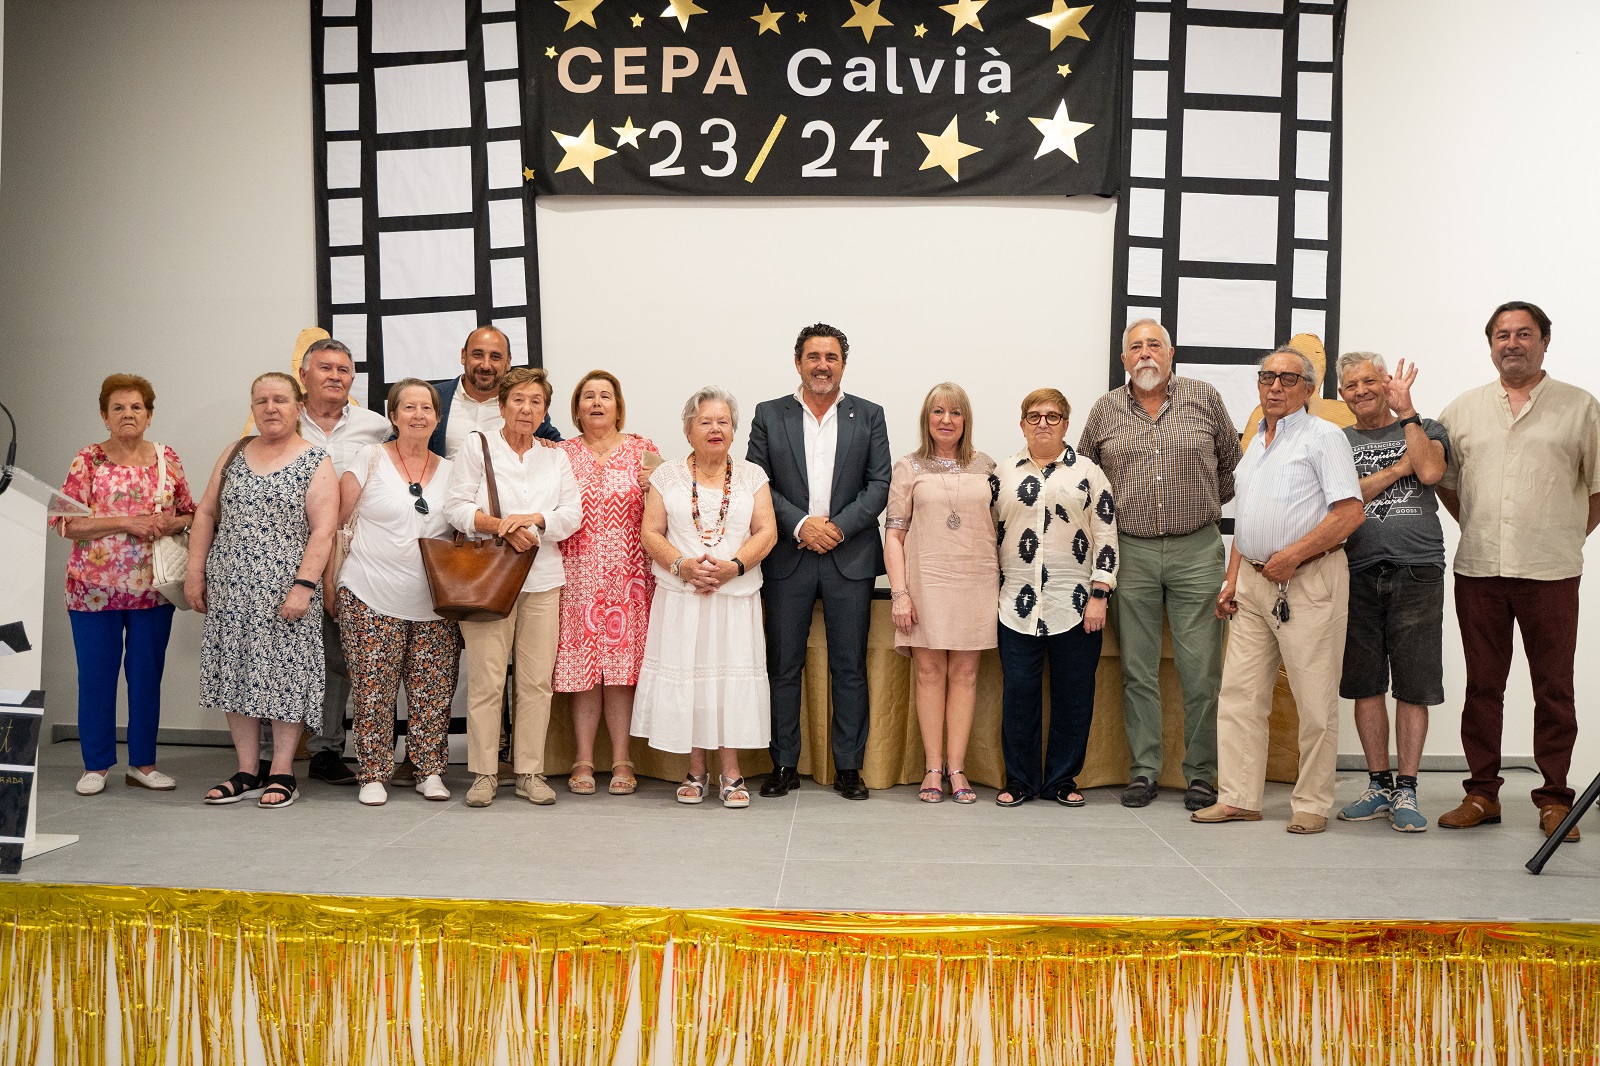 El Centro de Educación de Personas Adultas de Calvià (CEPA) celebró ayer la fiesta de fin de curso con un acto con la participación de alumnado, profesorado, personal de servicios y autoridades.